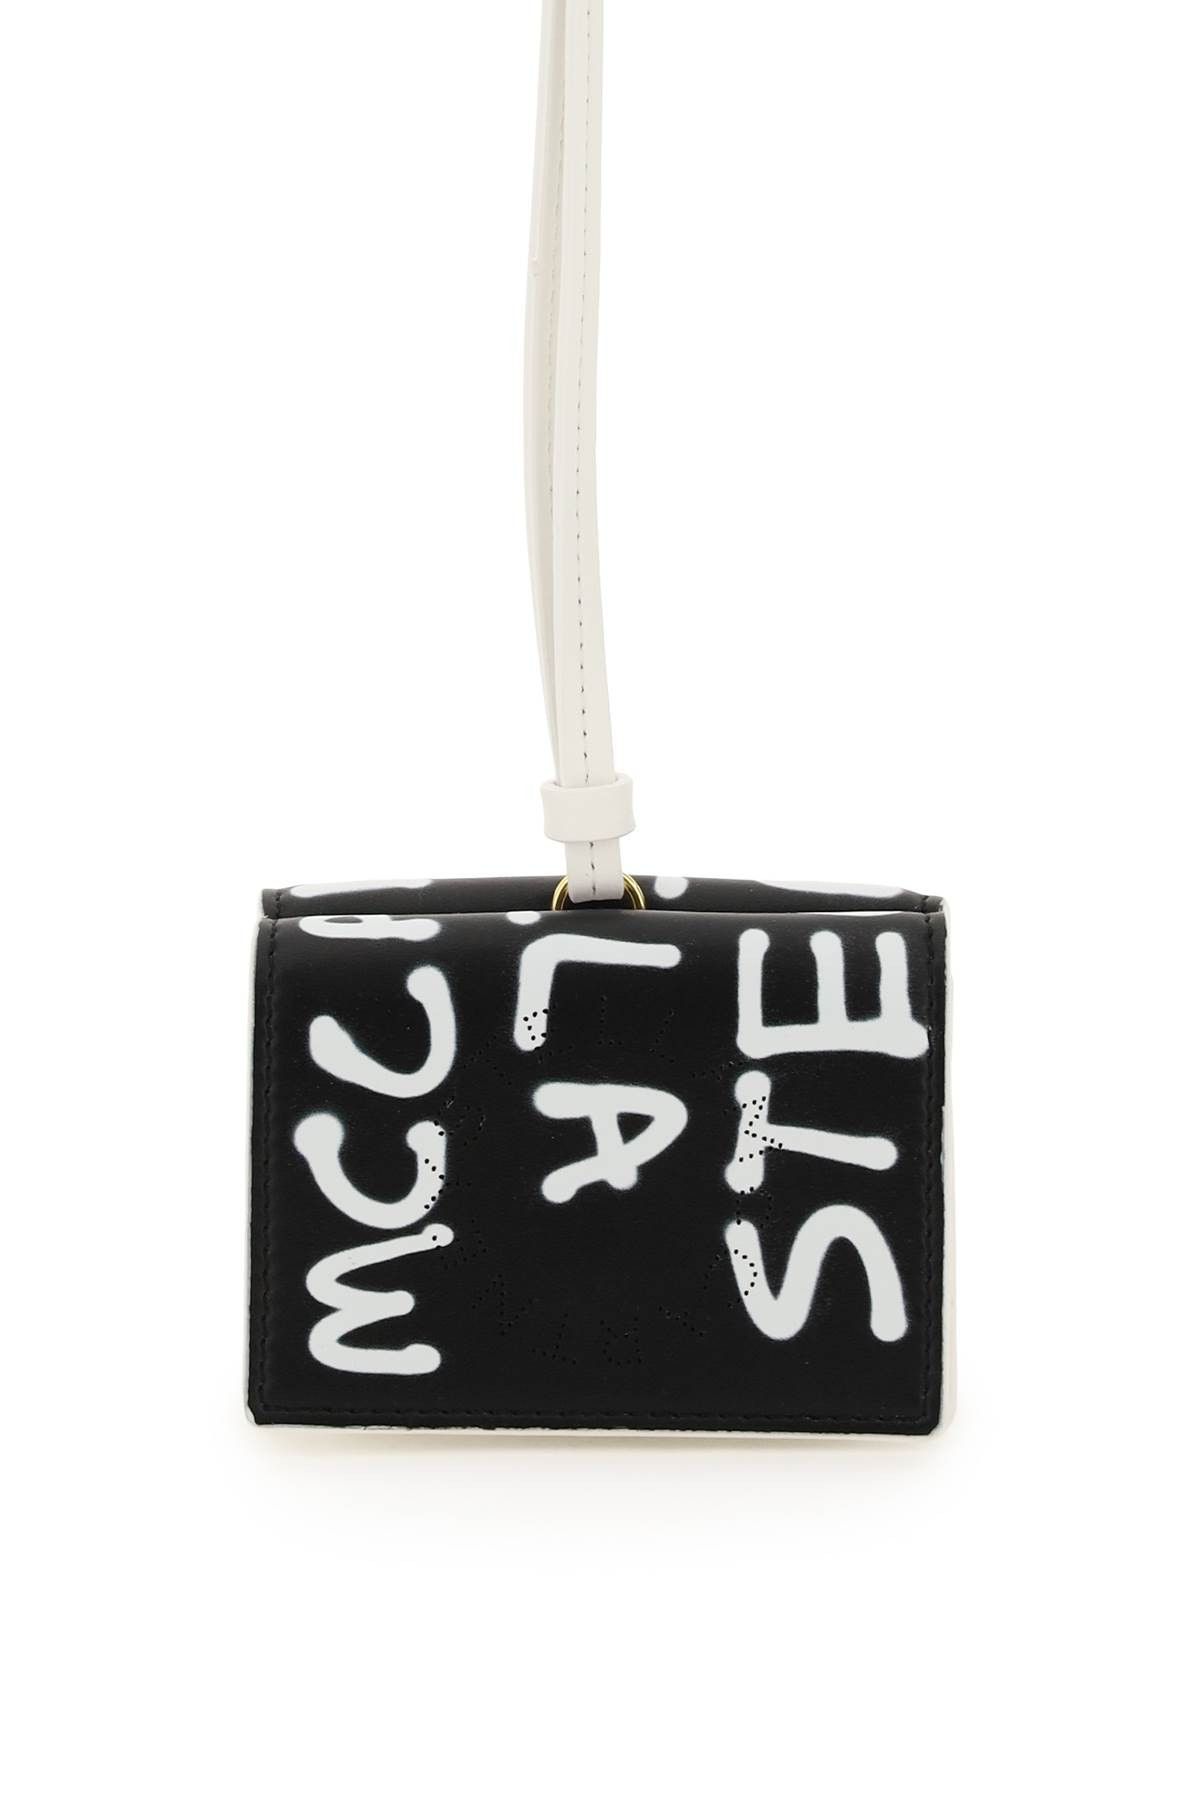 Stella McCartney Stella mccartney graffiti logo mini wallet Size ONE SIZE - 1 Preview